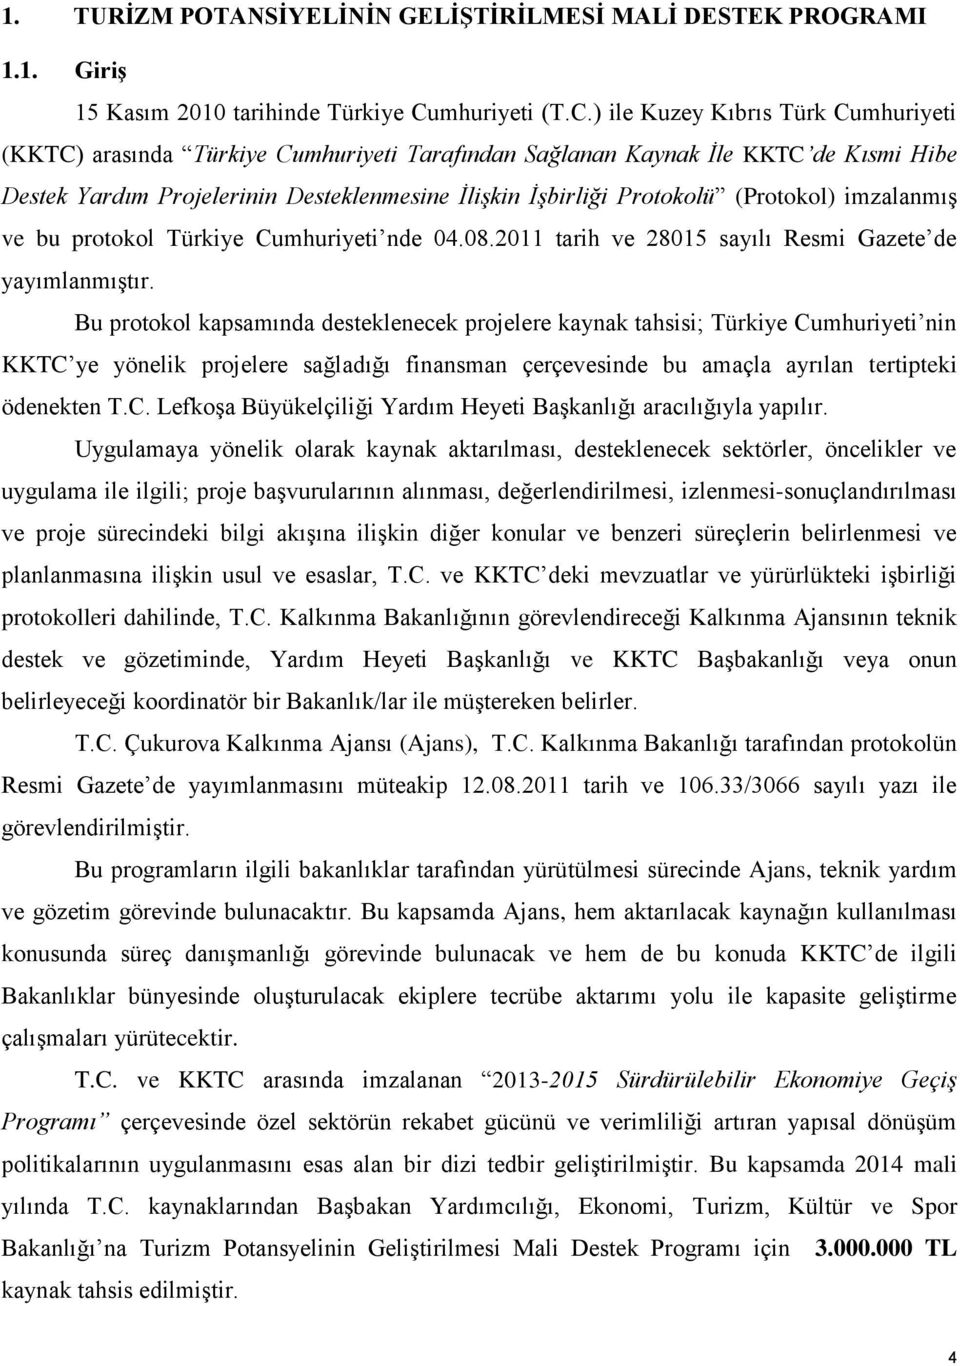 ) ile Kuzey Kıbrıs Türk Cumhuriyeti (KKTC) arasında Türkiye Cumhuriyeti Tarafından Sağlanan Kaynak İle KKTC de Kısmi Hibe Destek Yardım Projelerinin Desteklenmesine İlişkin İşbirliği Protokolü